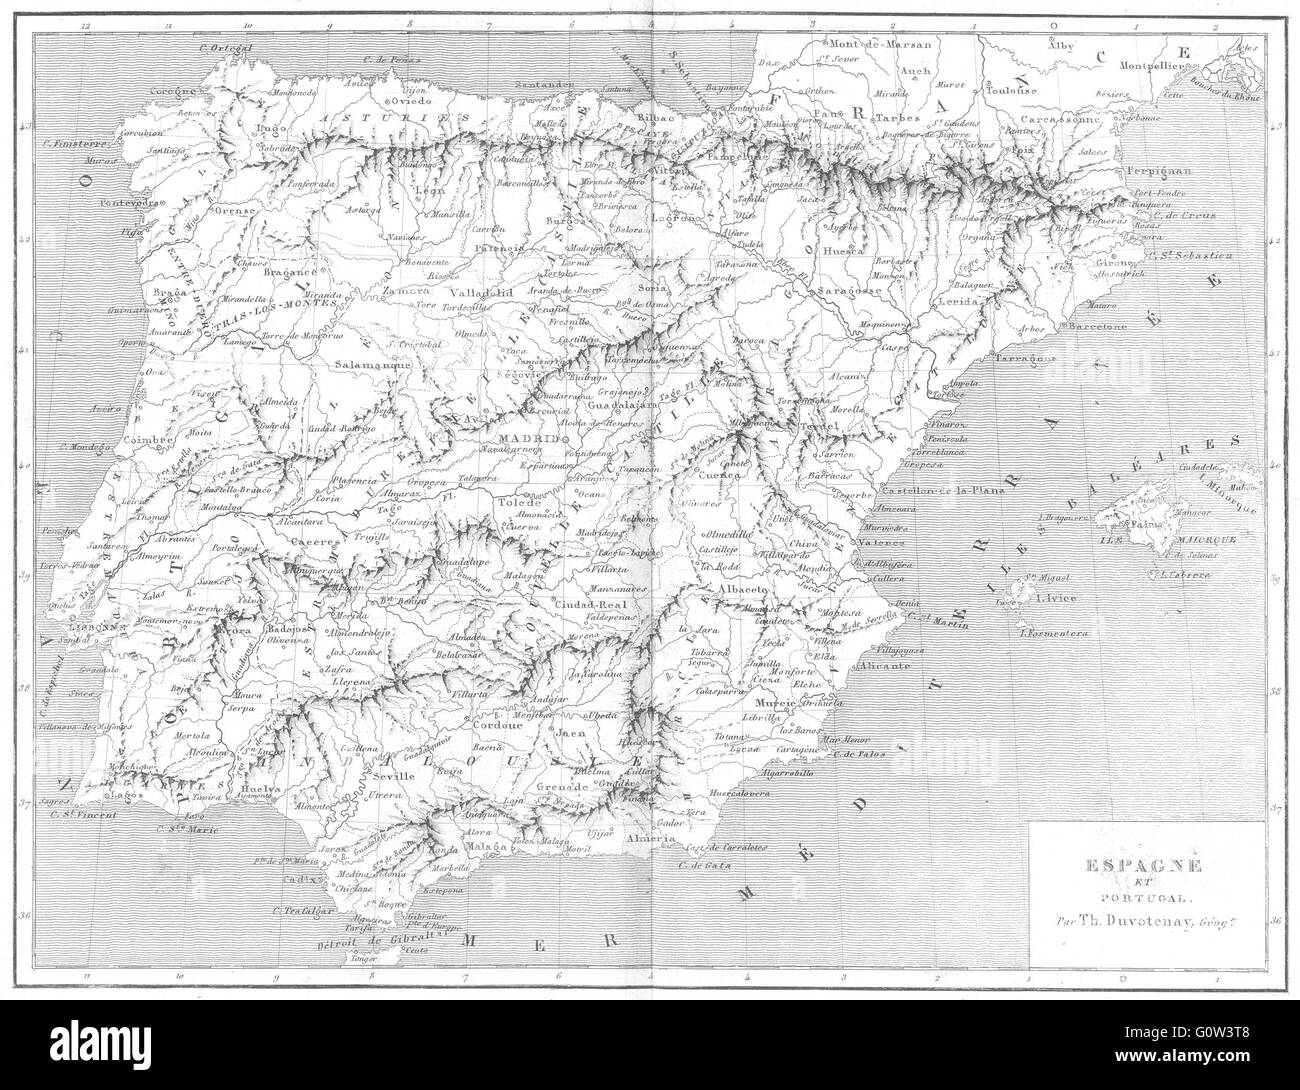 SPAIN: Espagne(Spain)et Portugal, 1879 antique map Stock Photo